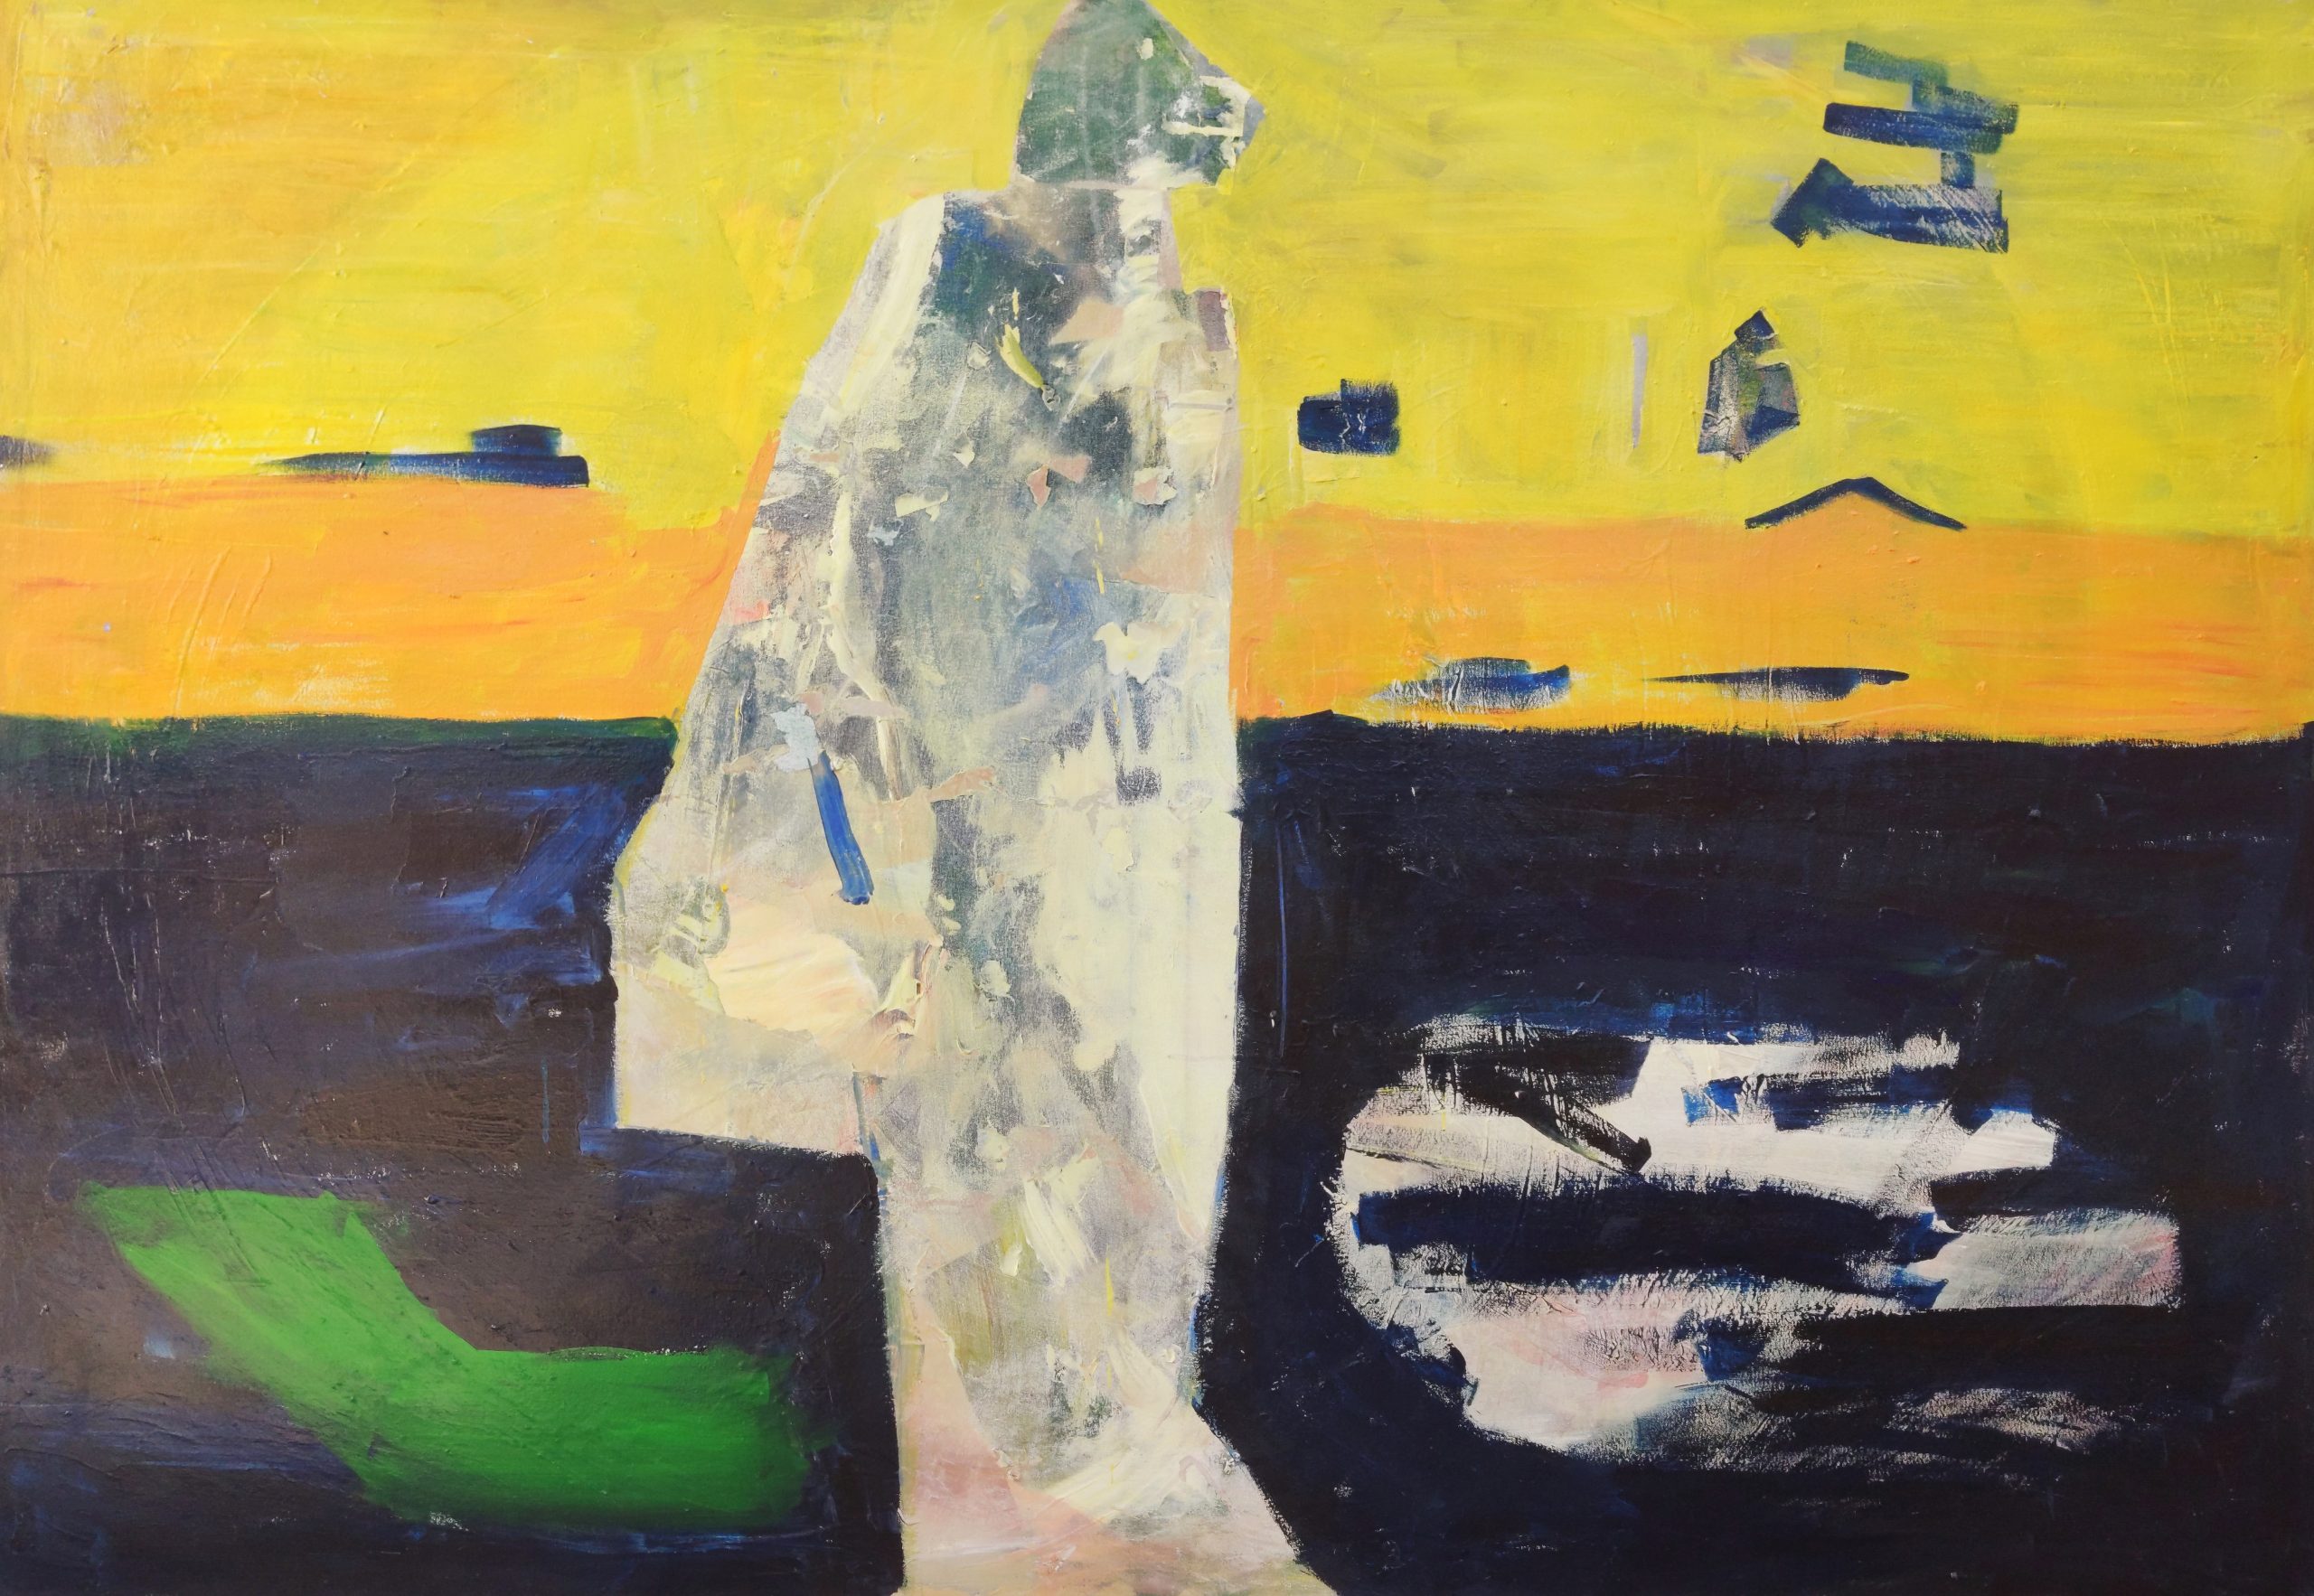 Akryl na plátně od Darie Borshch s názvem "Zvuk ticha" (The Stillness Within), na němž je zobrazena postava v neutrálních šedých tónech symbolizující osvobození a vnitřní klid.